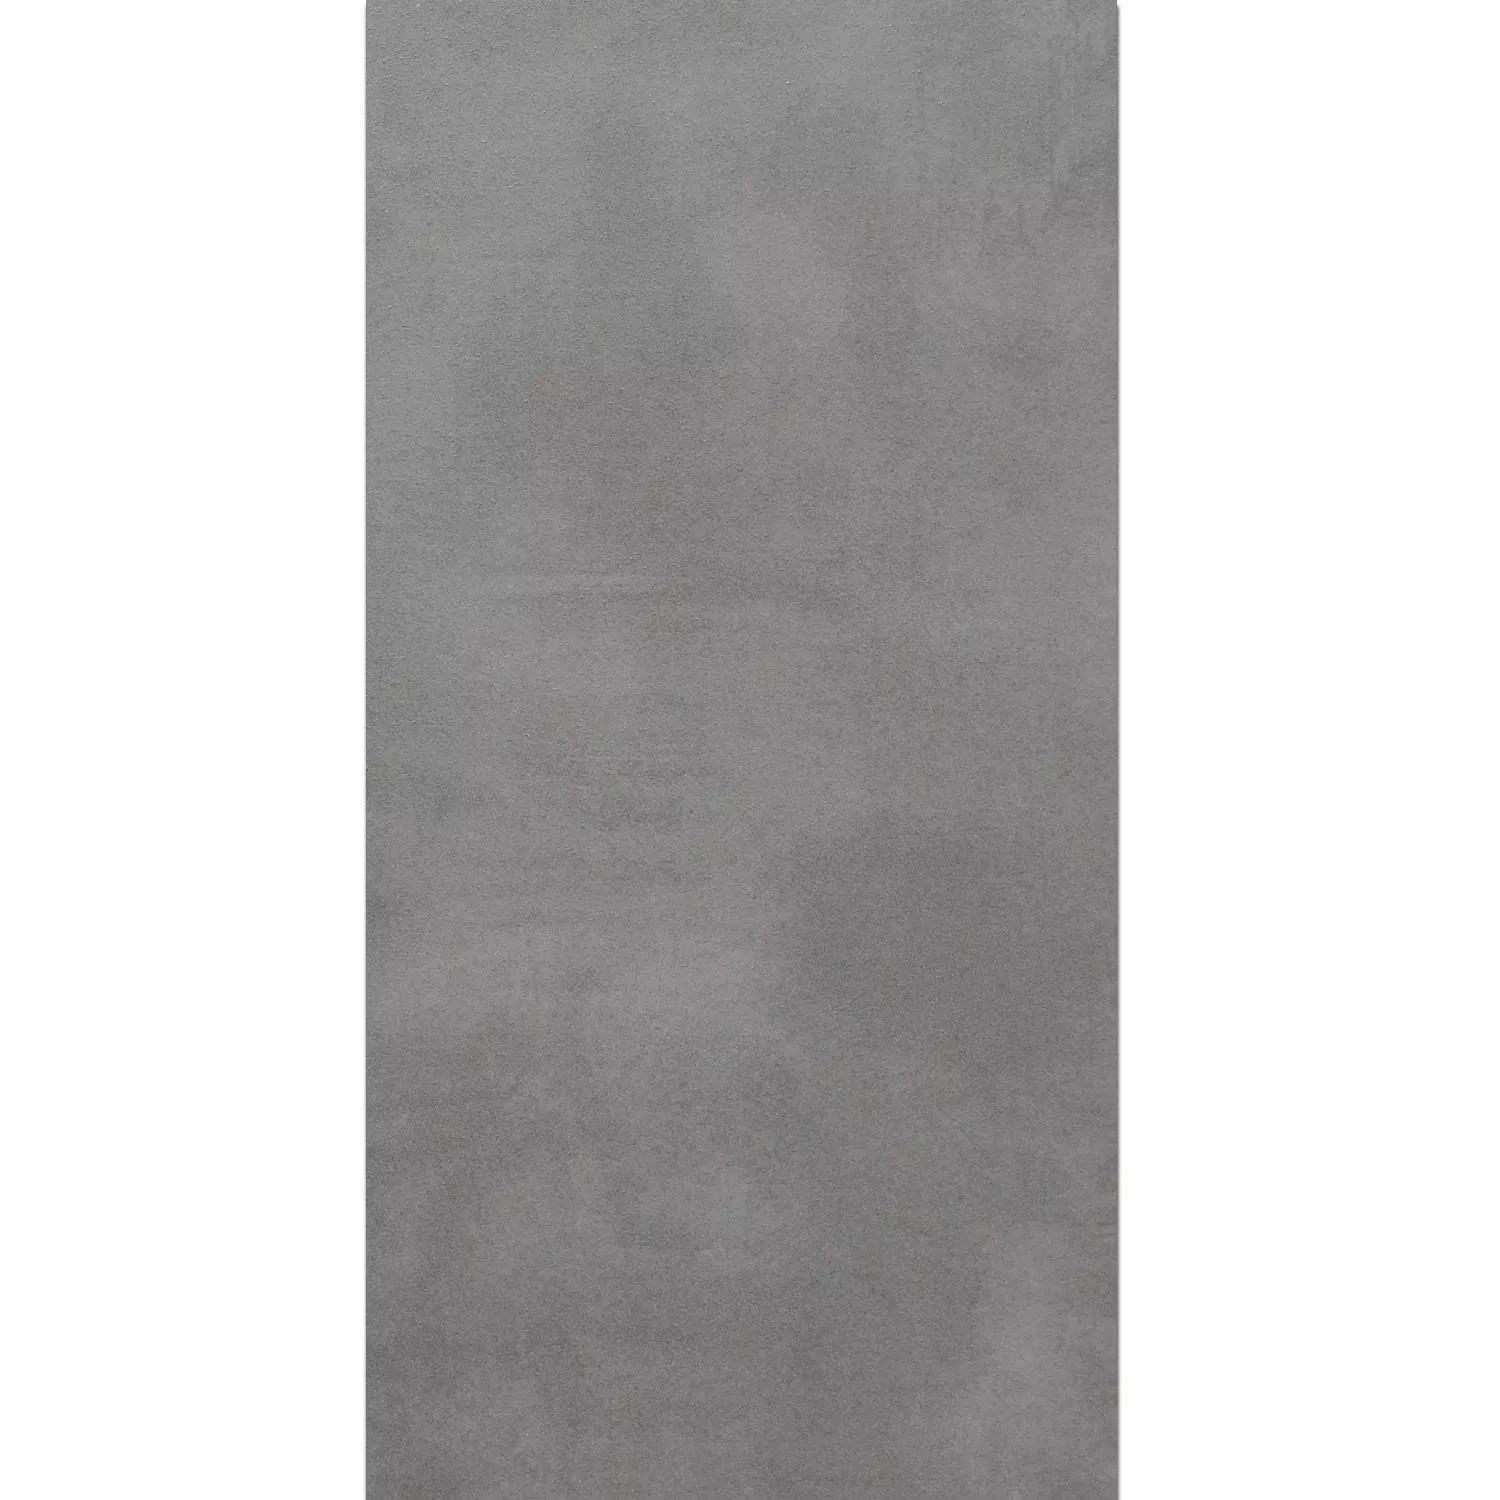 Campione Piastrella Esterni Zeus Cemento Ottica Grey 60x90cm